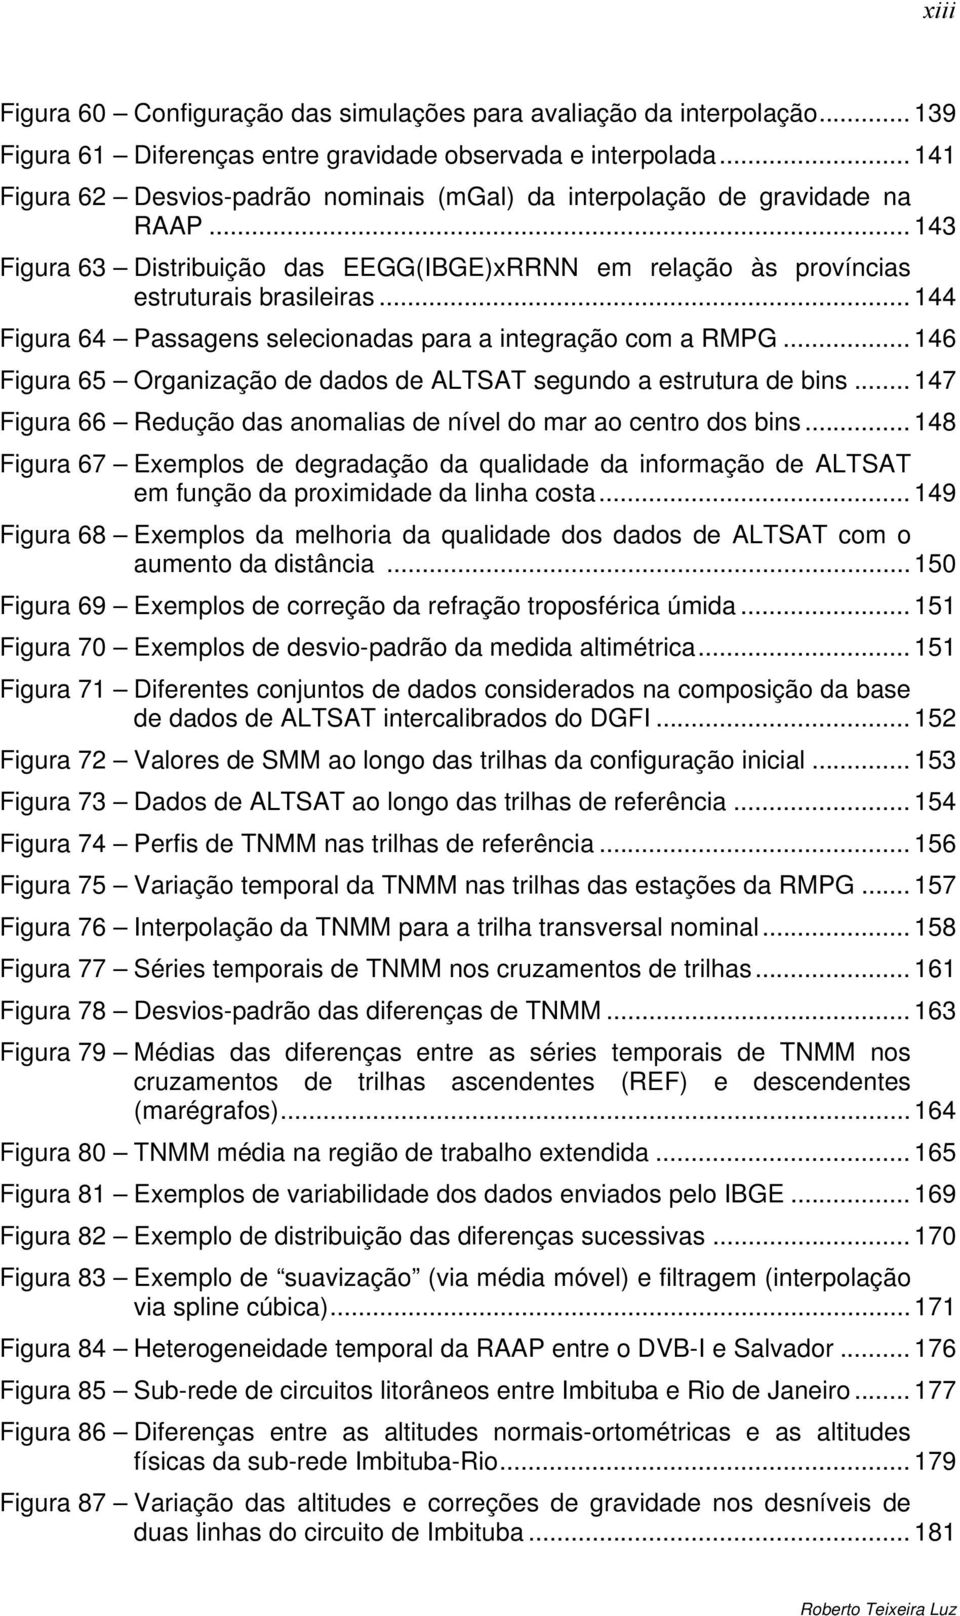 .. 144 Figura 64 Passagens selecionadas para a integração com a RMPG... 146 Figura 65 Organização de dados de ALTSAT segundo a estrutura de bins.